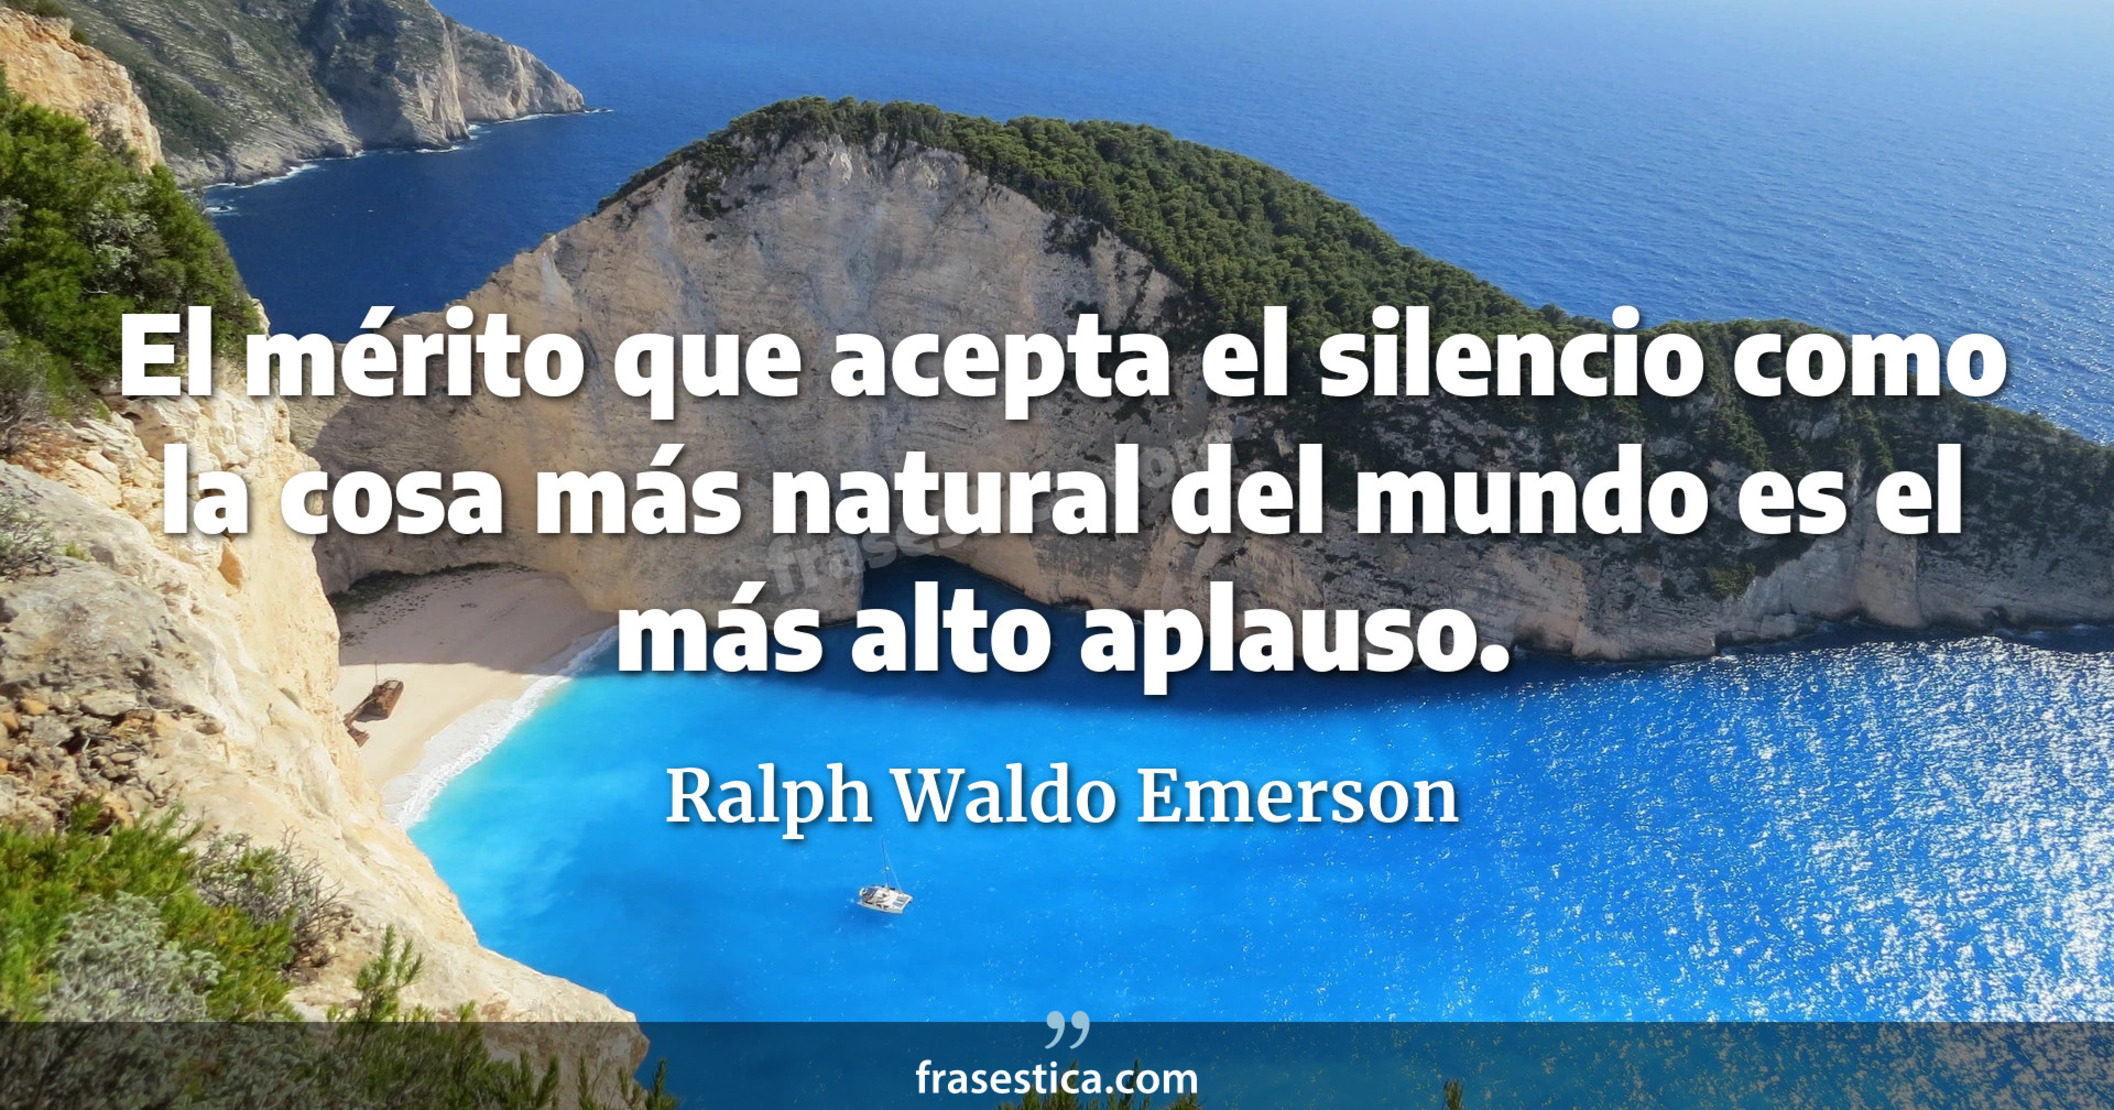 El mérito que acepta el silencio como la cosa más natural del mundo es el más alto aplauso. - Ralph Waldo Emerson